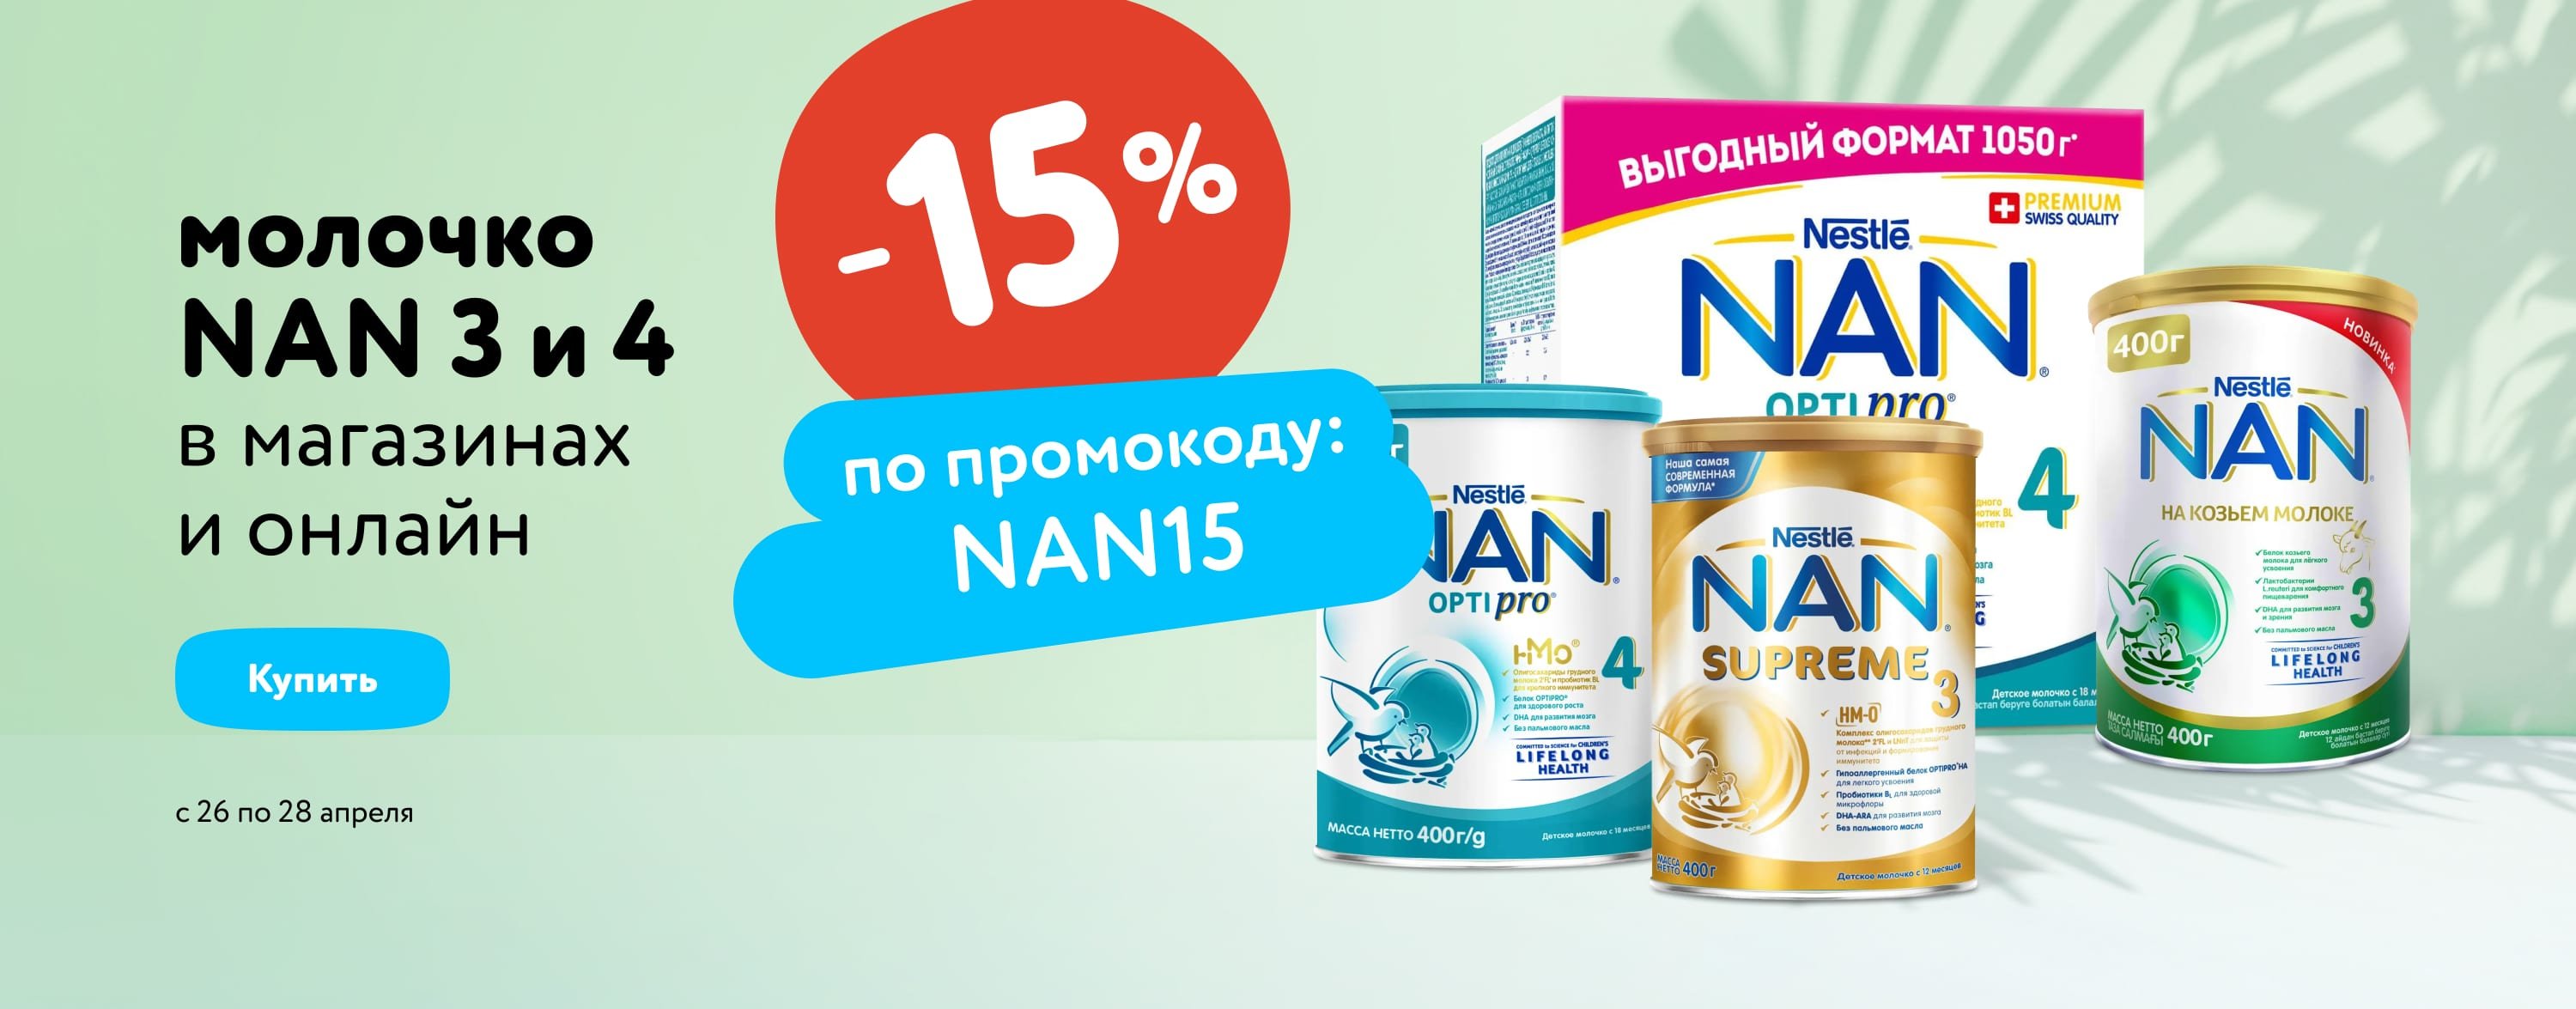 Доп. скидка 15% по промокоду на молочко NAN 3 и 4